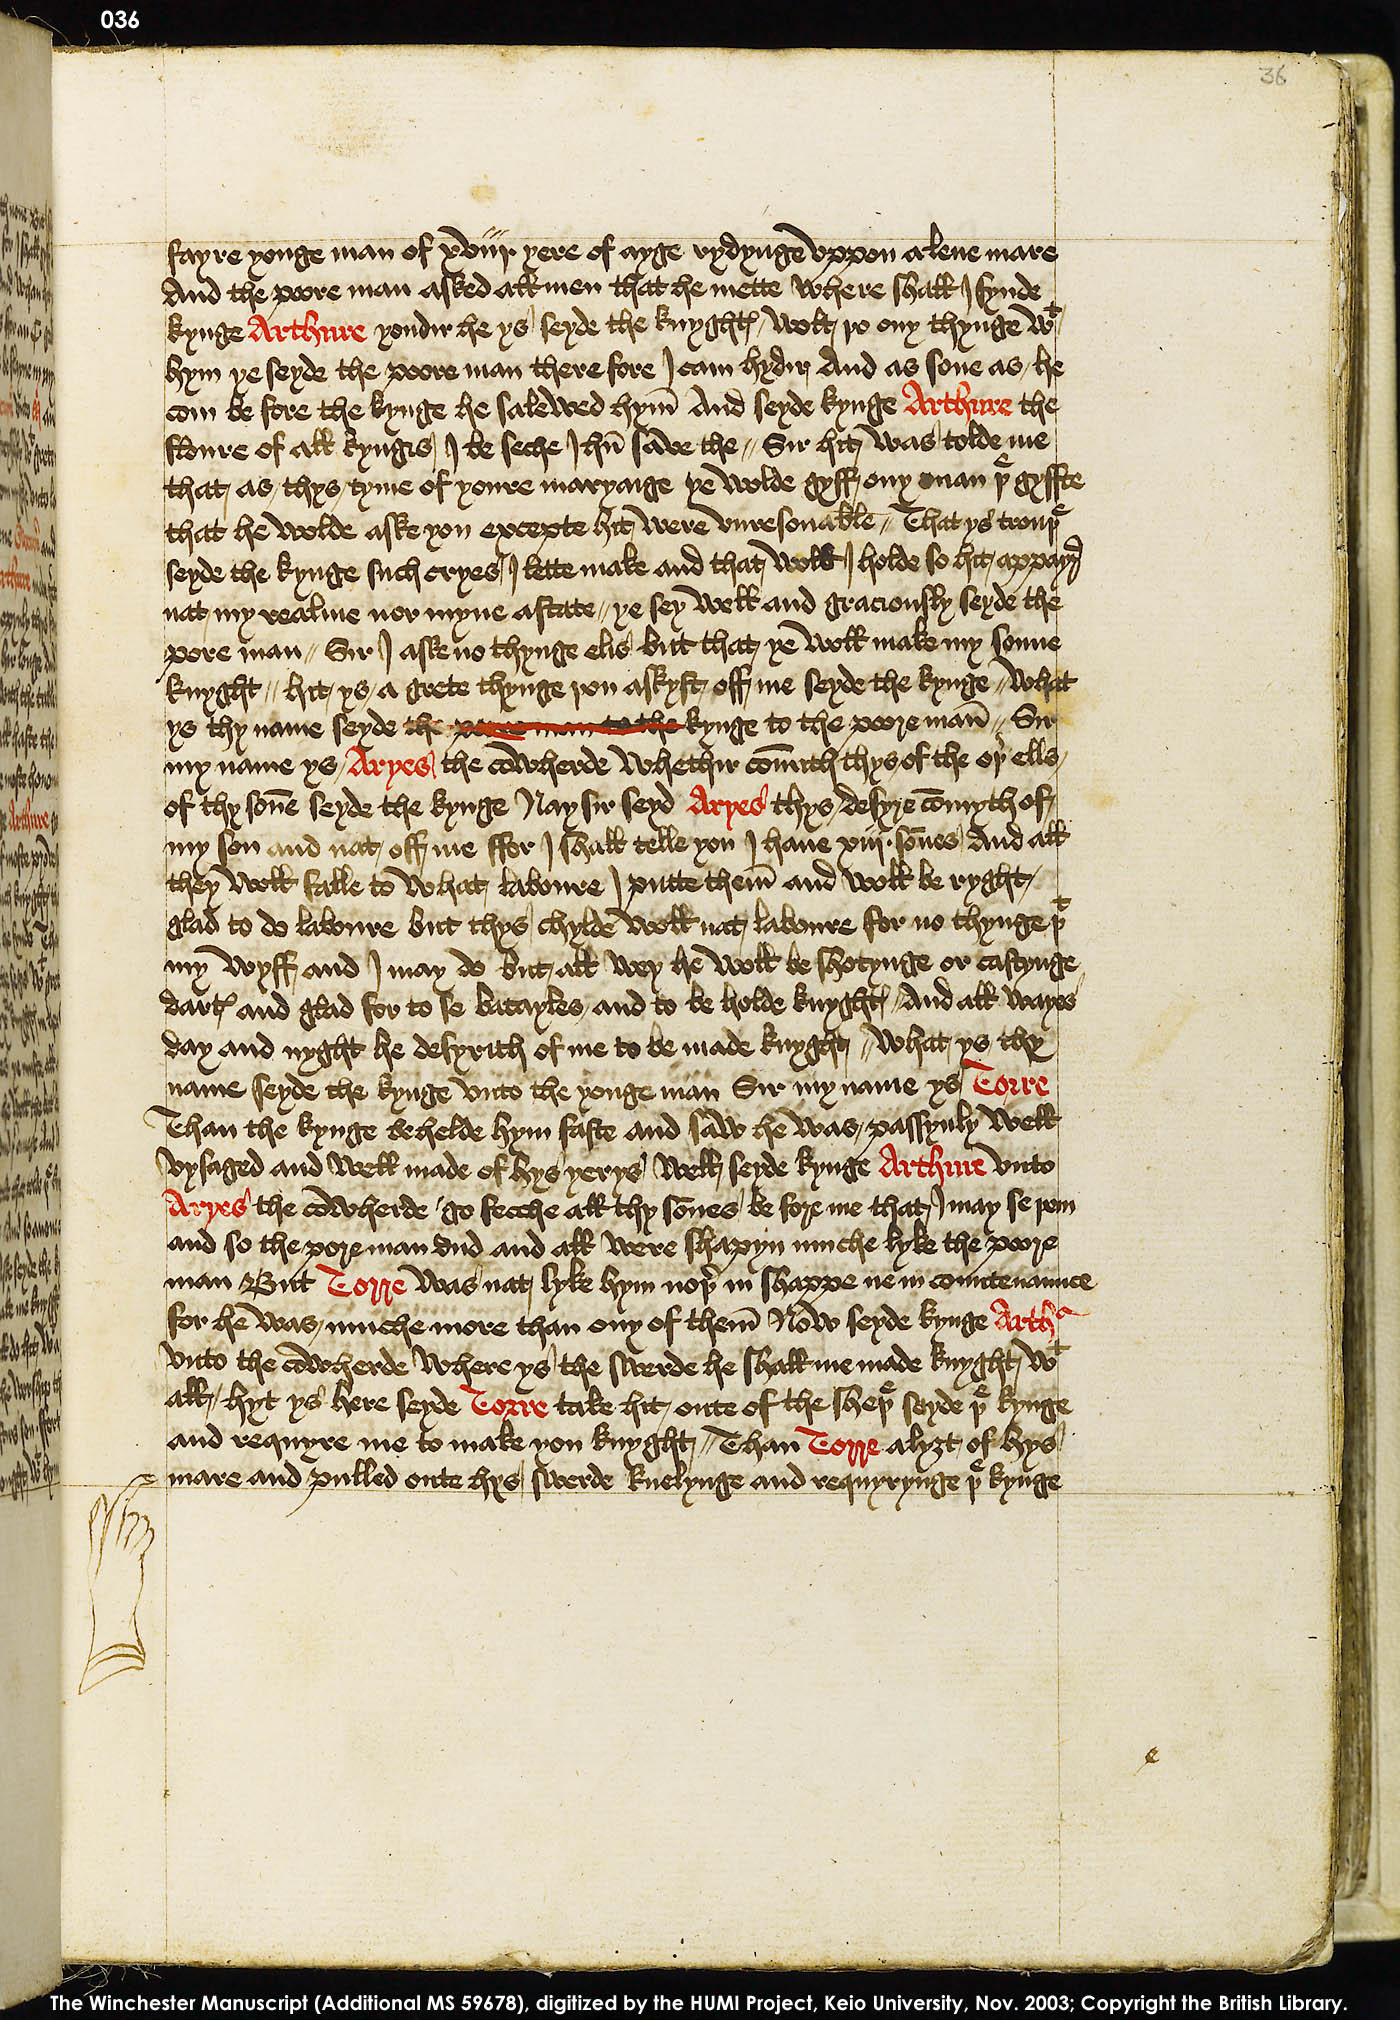 Folio 36r